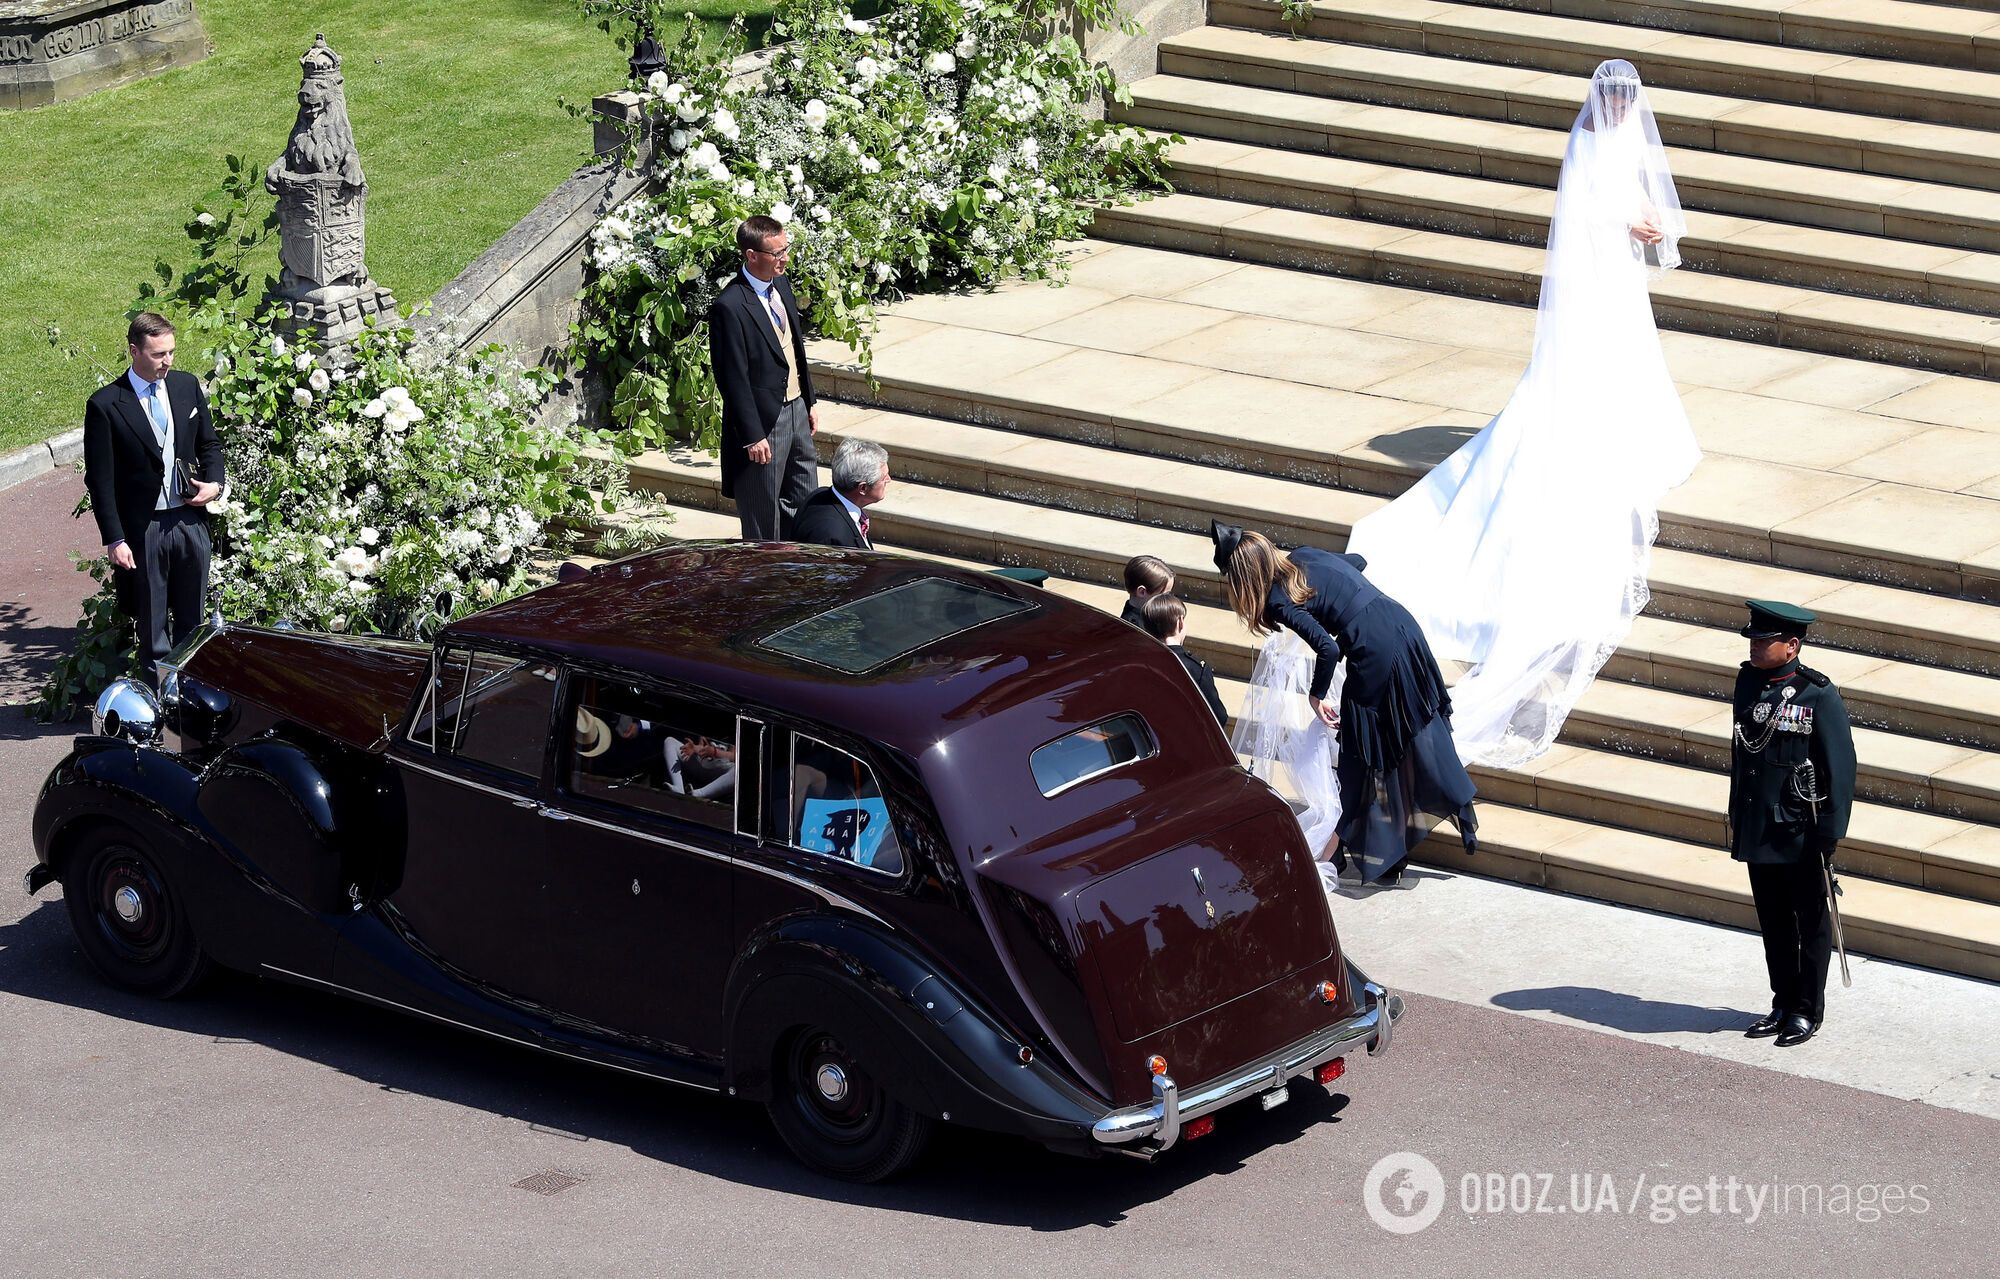 Свадебный образ Меган Маркл: фата длиной пять метров и бриллиантовая тиара 